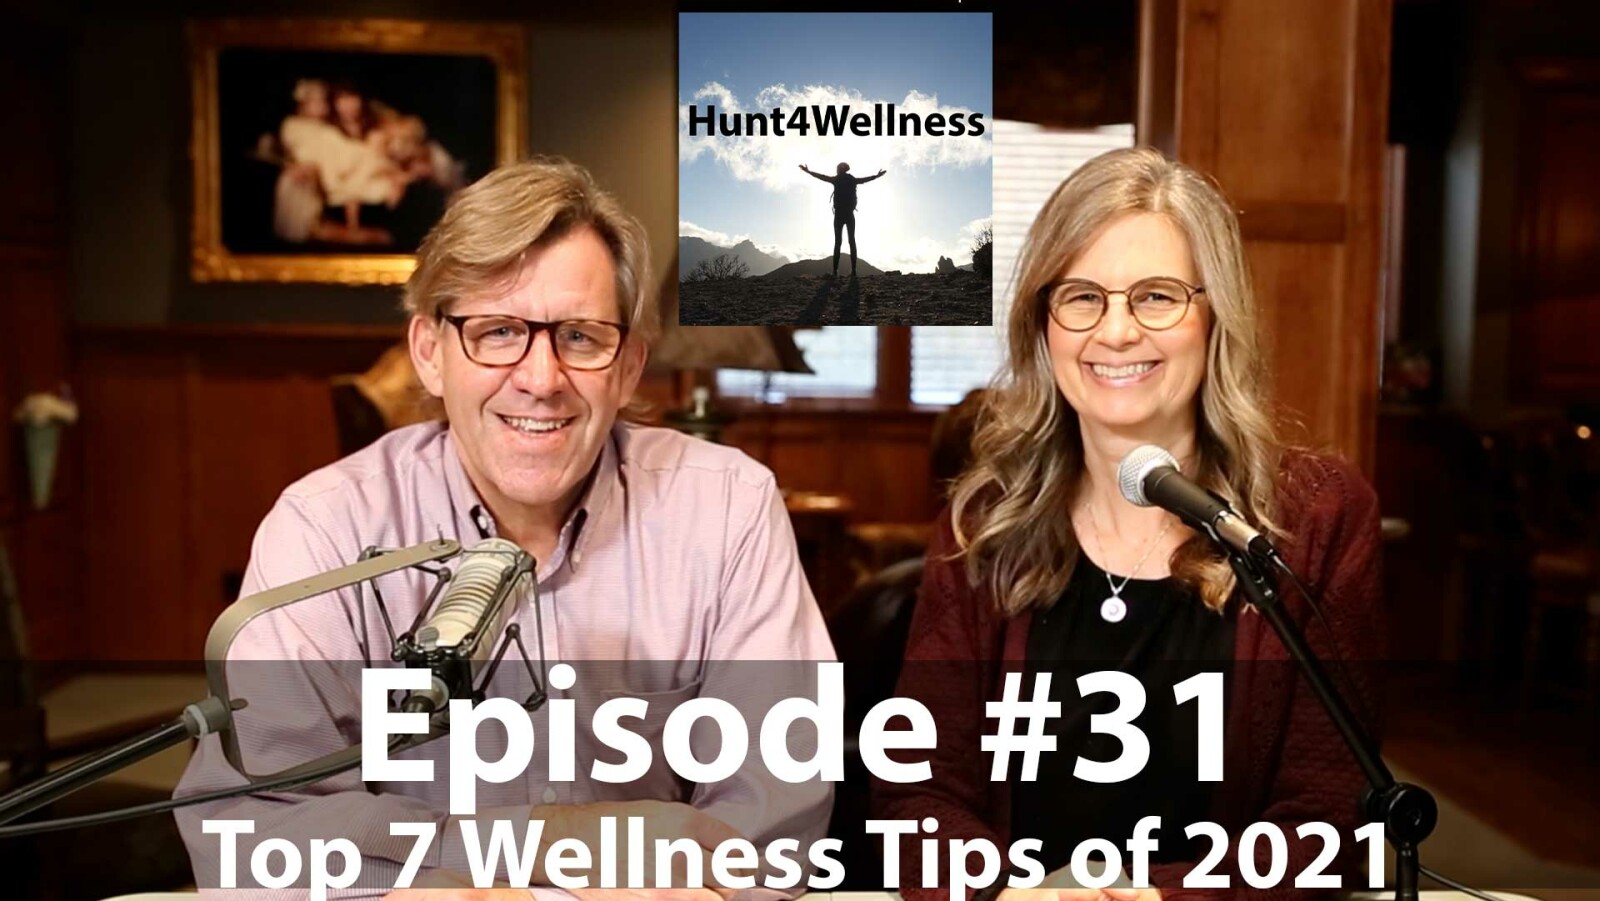 Episode #31 - Top 7 Wellness Tips of 2021